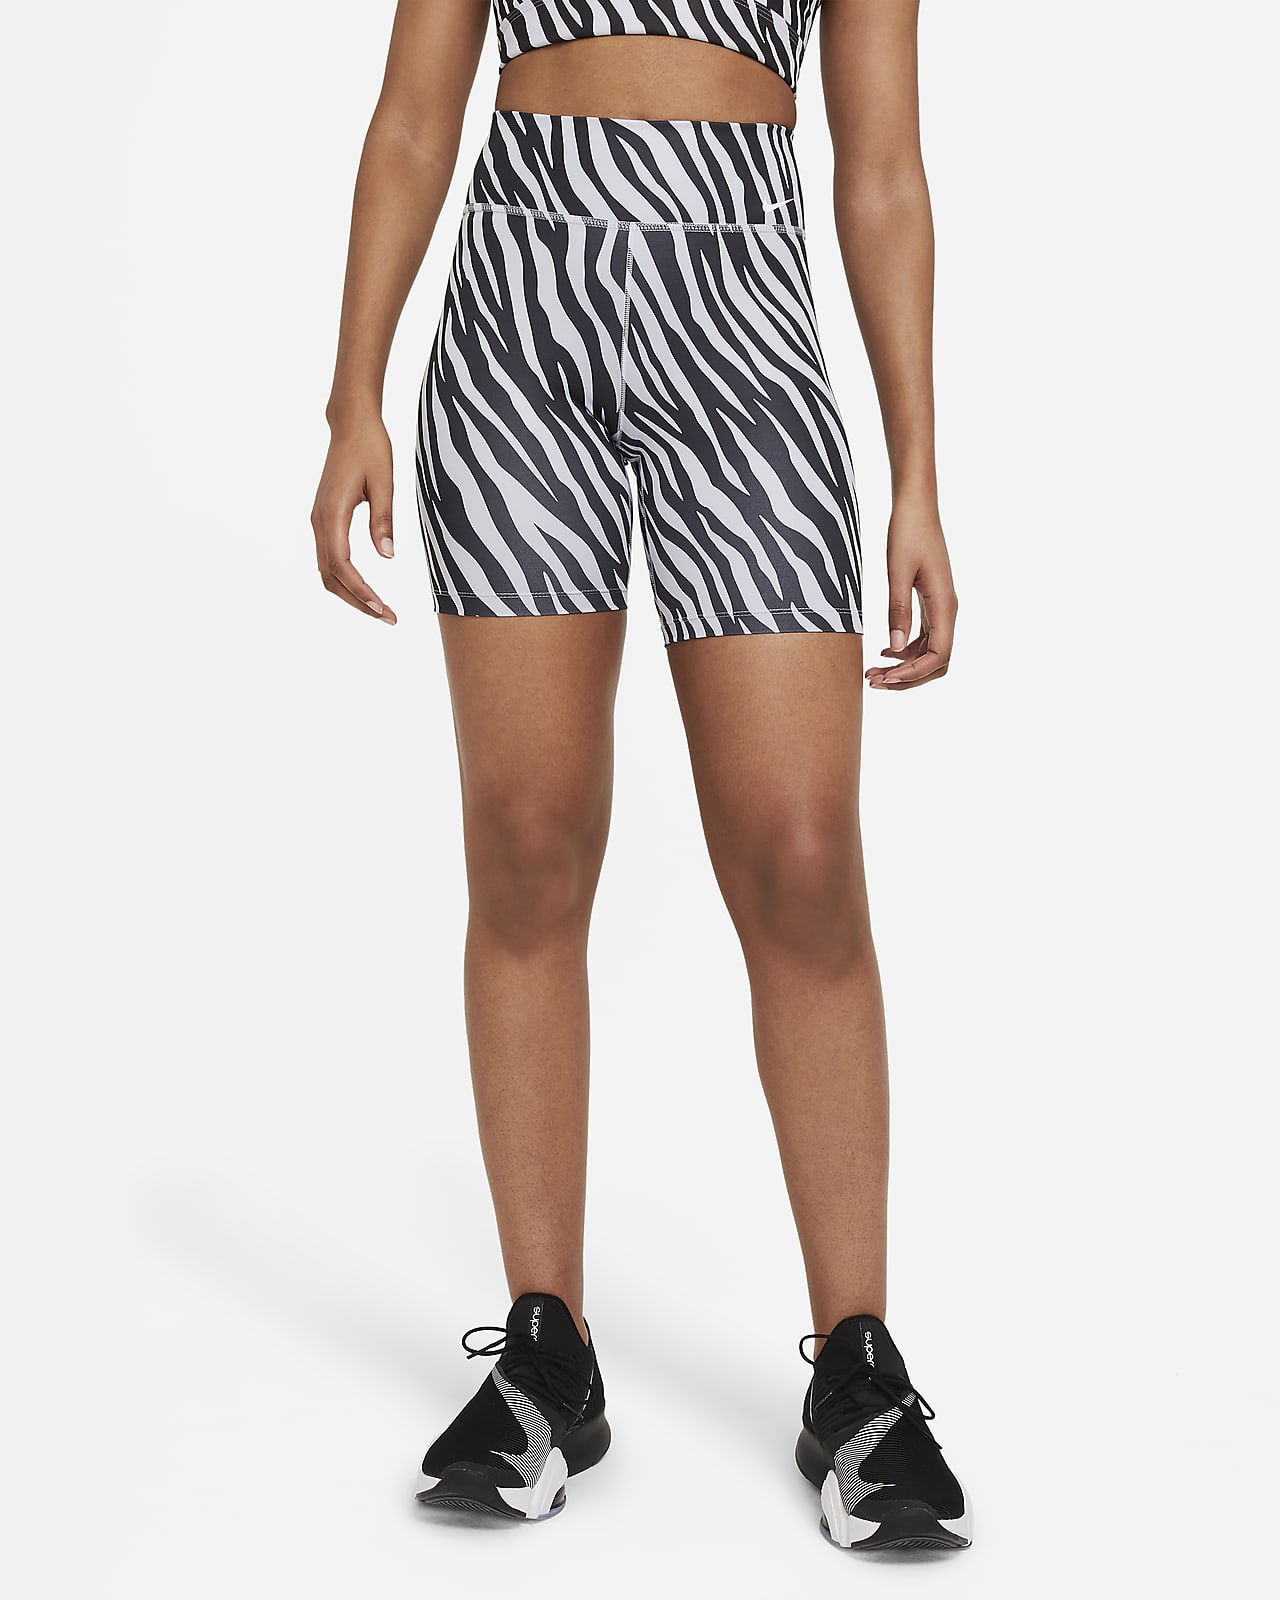 zebra nike shorts